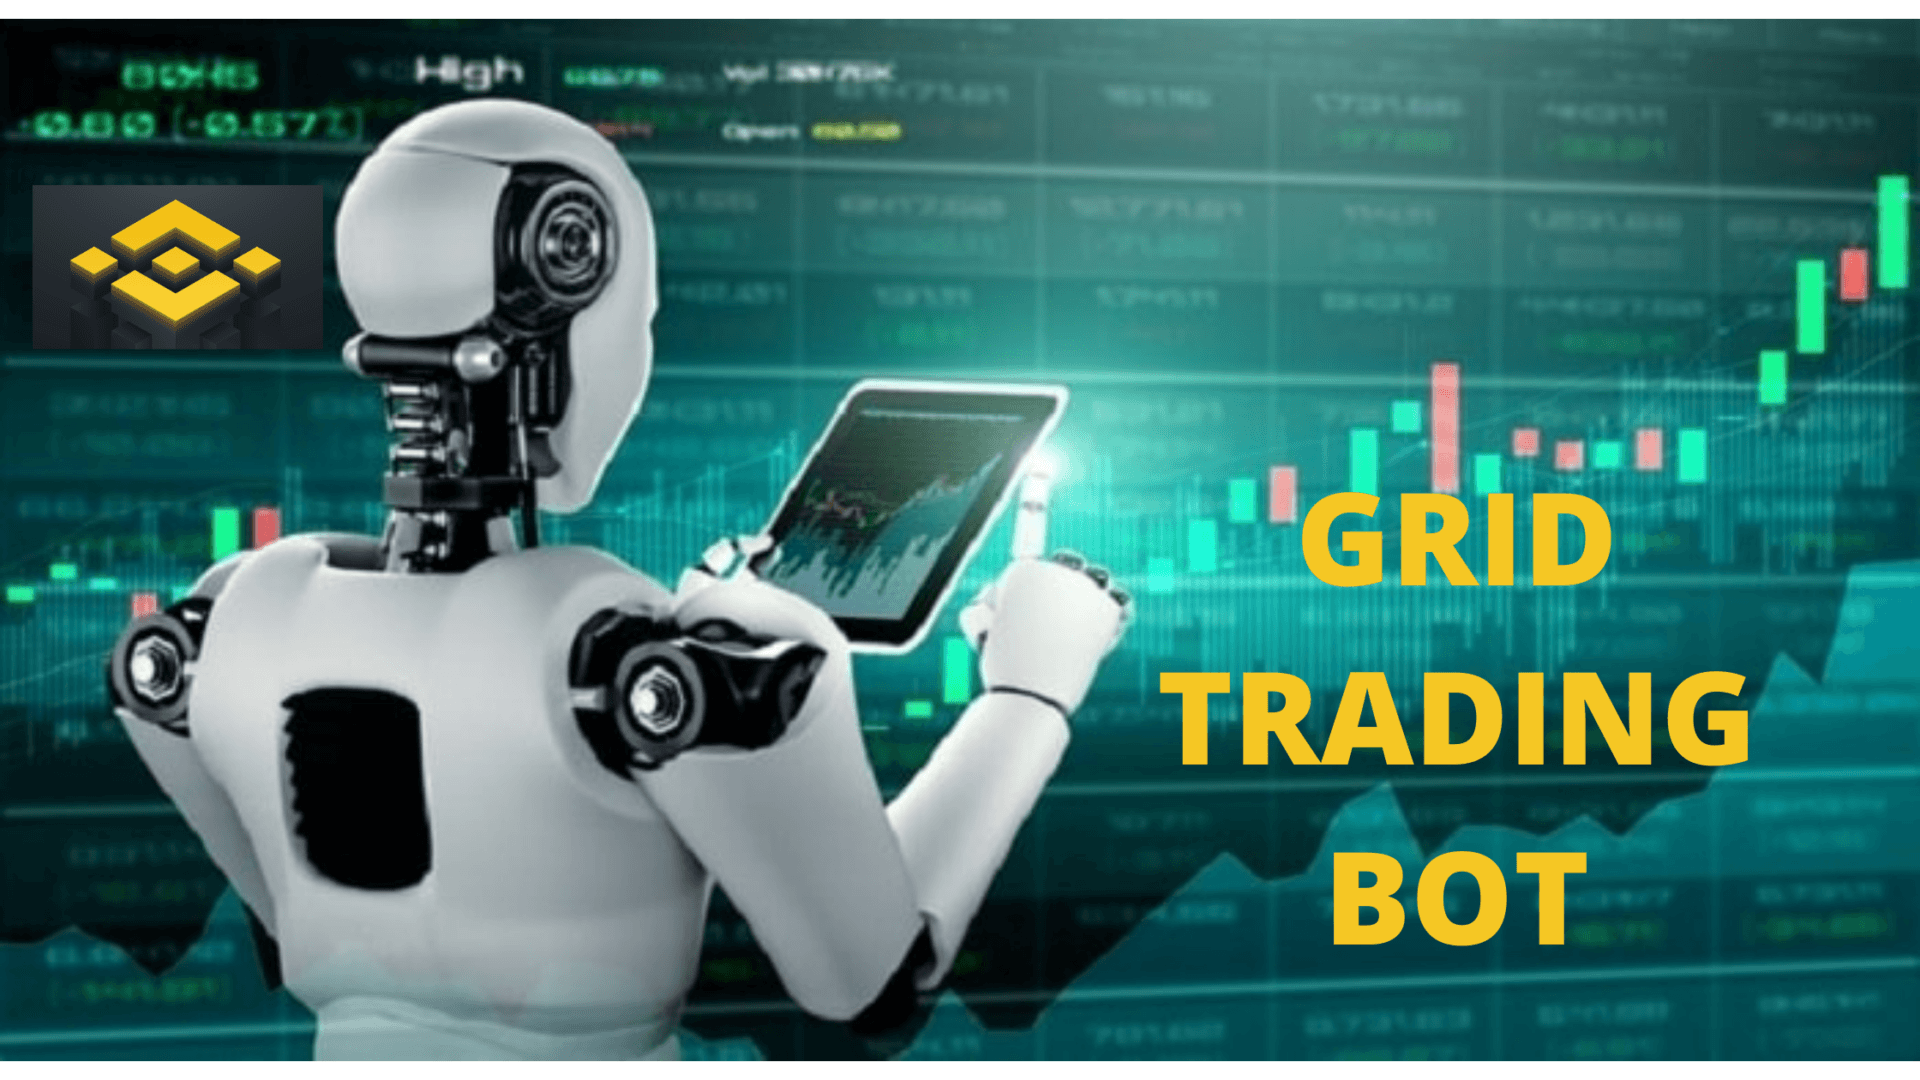 Sta je grid bot? Kriptovalute koje trenutno držite mogle bi da generišu pasivan prihod uz pomoć robota (Grid Bota). Čak i ako imate male posede ili ograničen kapital, OVO može postati veoma profitabilno sa malo poznatom strategijom koja se zove GRID TRADING. Saznajte sta je Grid Bot Trading i kako ga aktivirati.